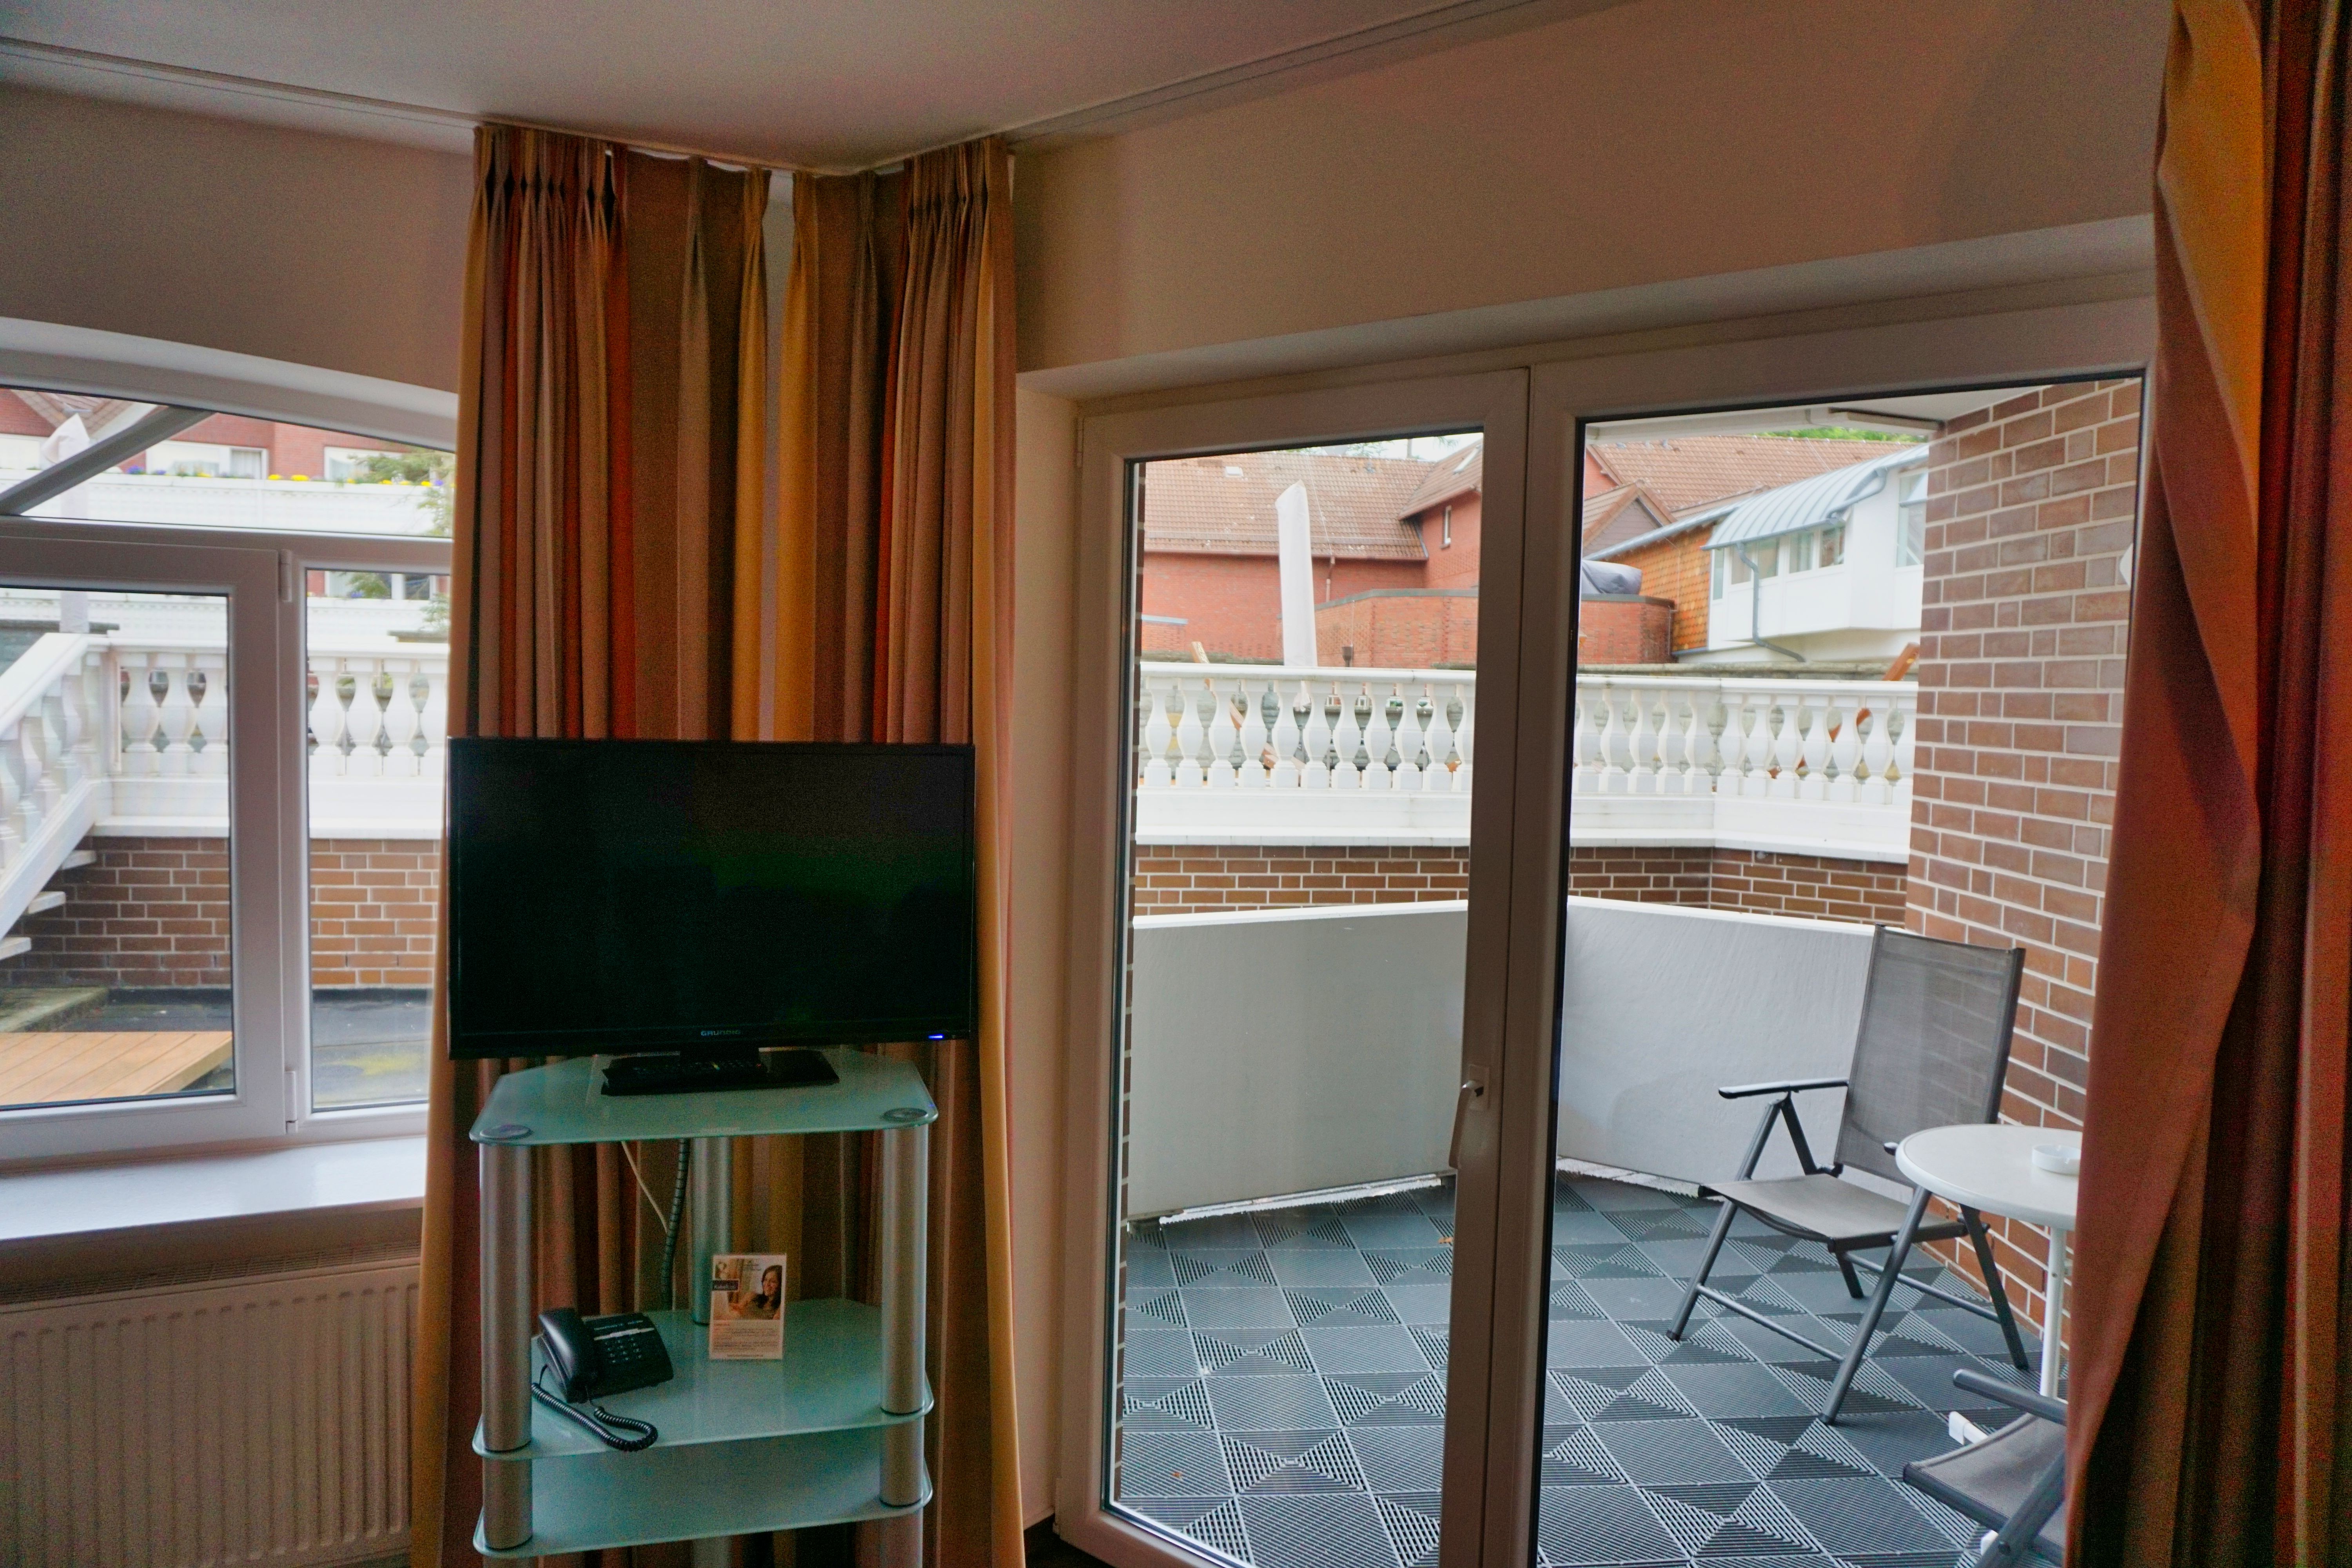 Zimmer mit Terrasse im Hotel Upstalsboom Landhotel Friesland, Varel.
